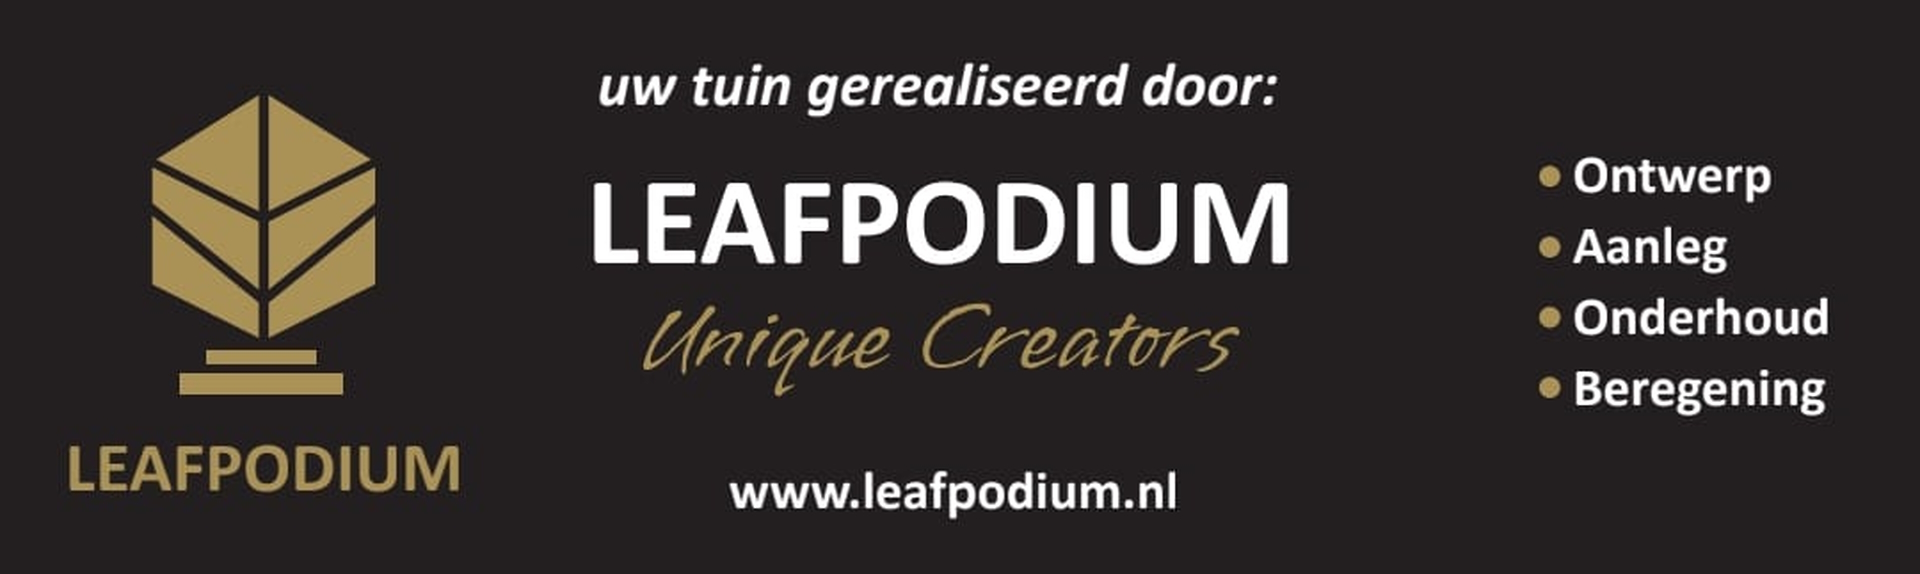 Leafpodium